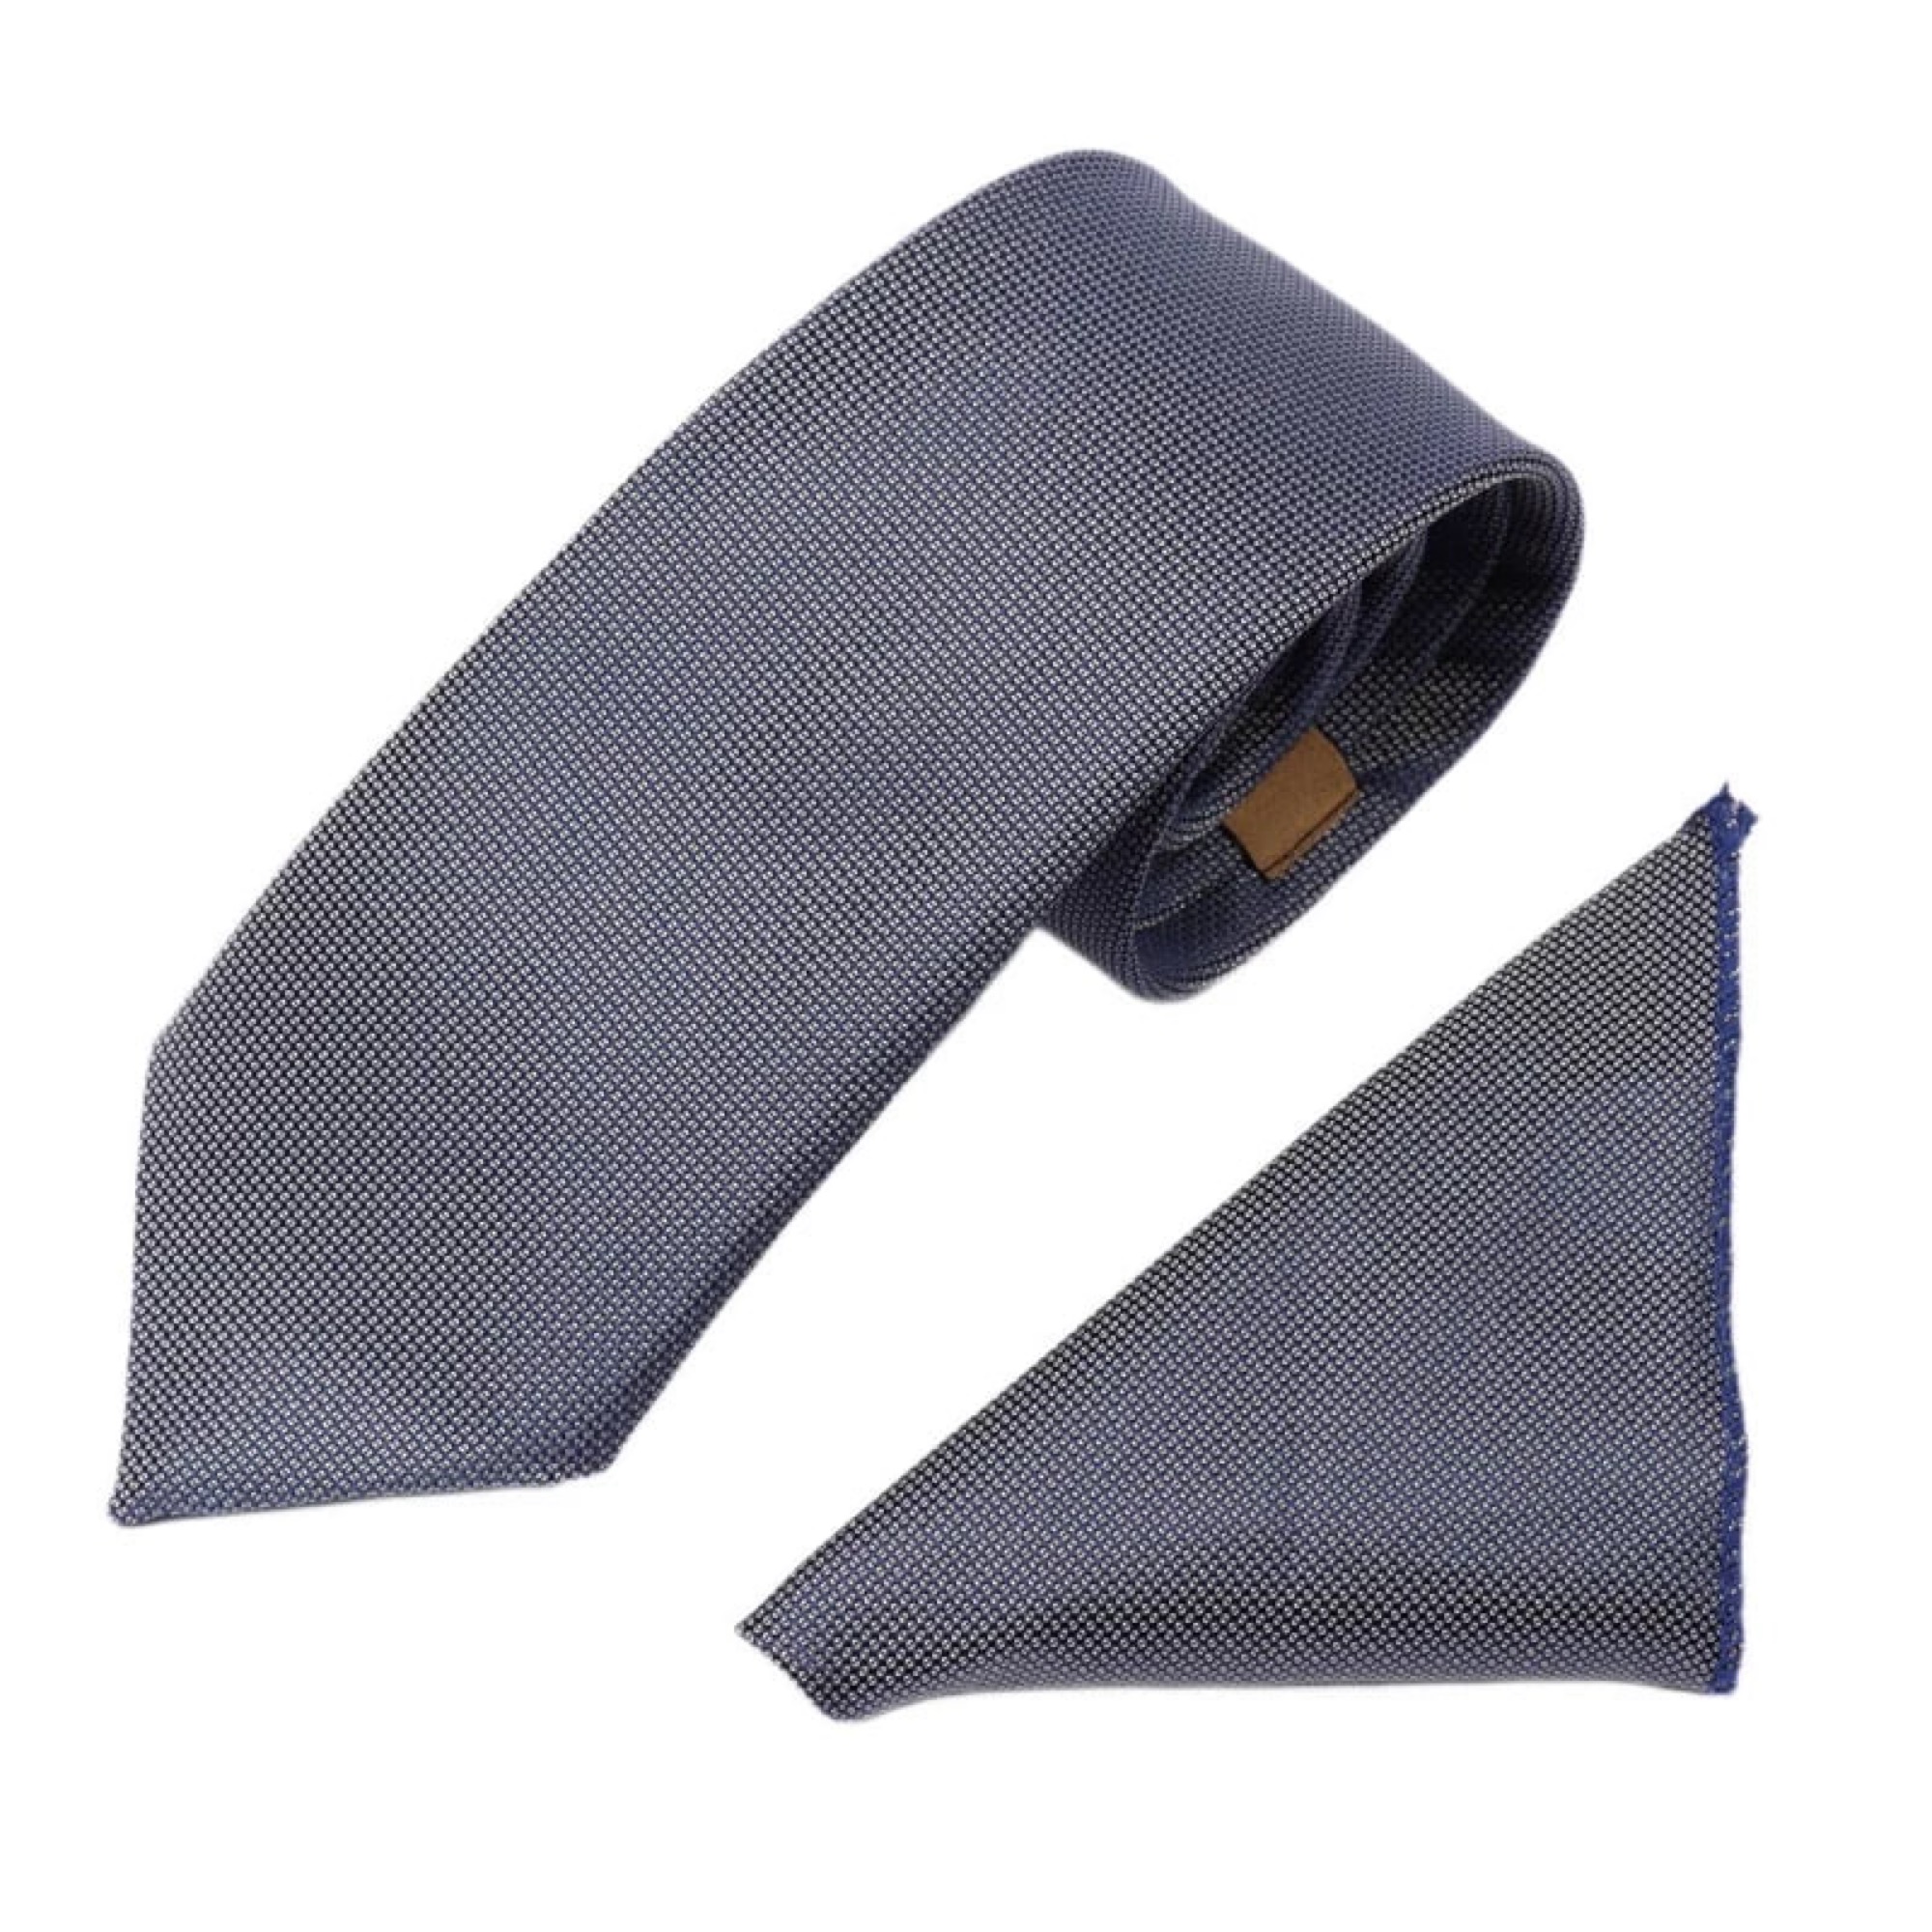 ست کراوات و دستمال جیب مردانه نسن طرح آکسفورد مدل SH12